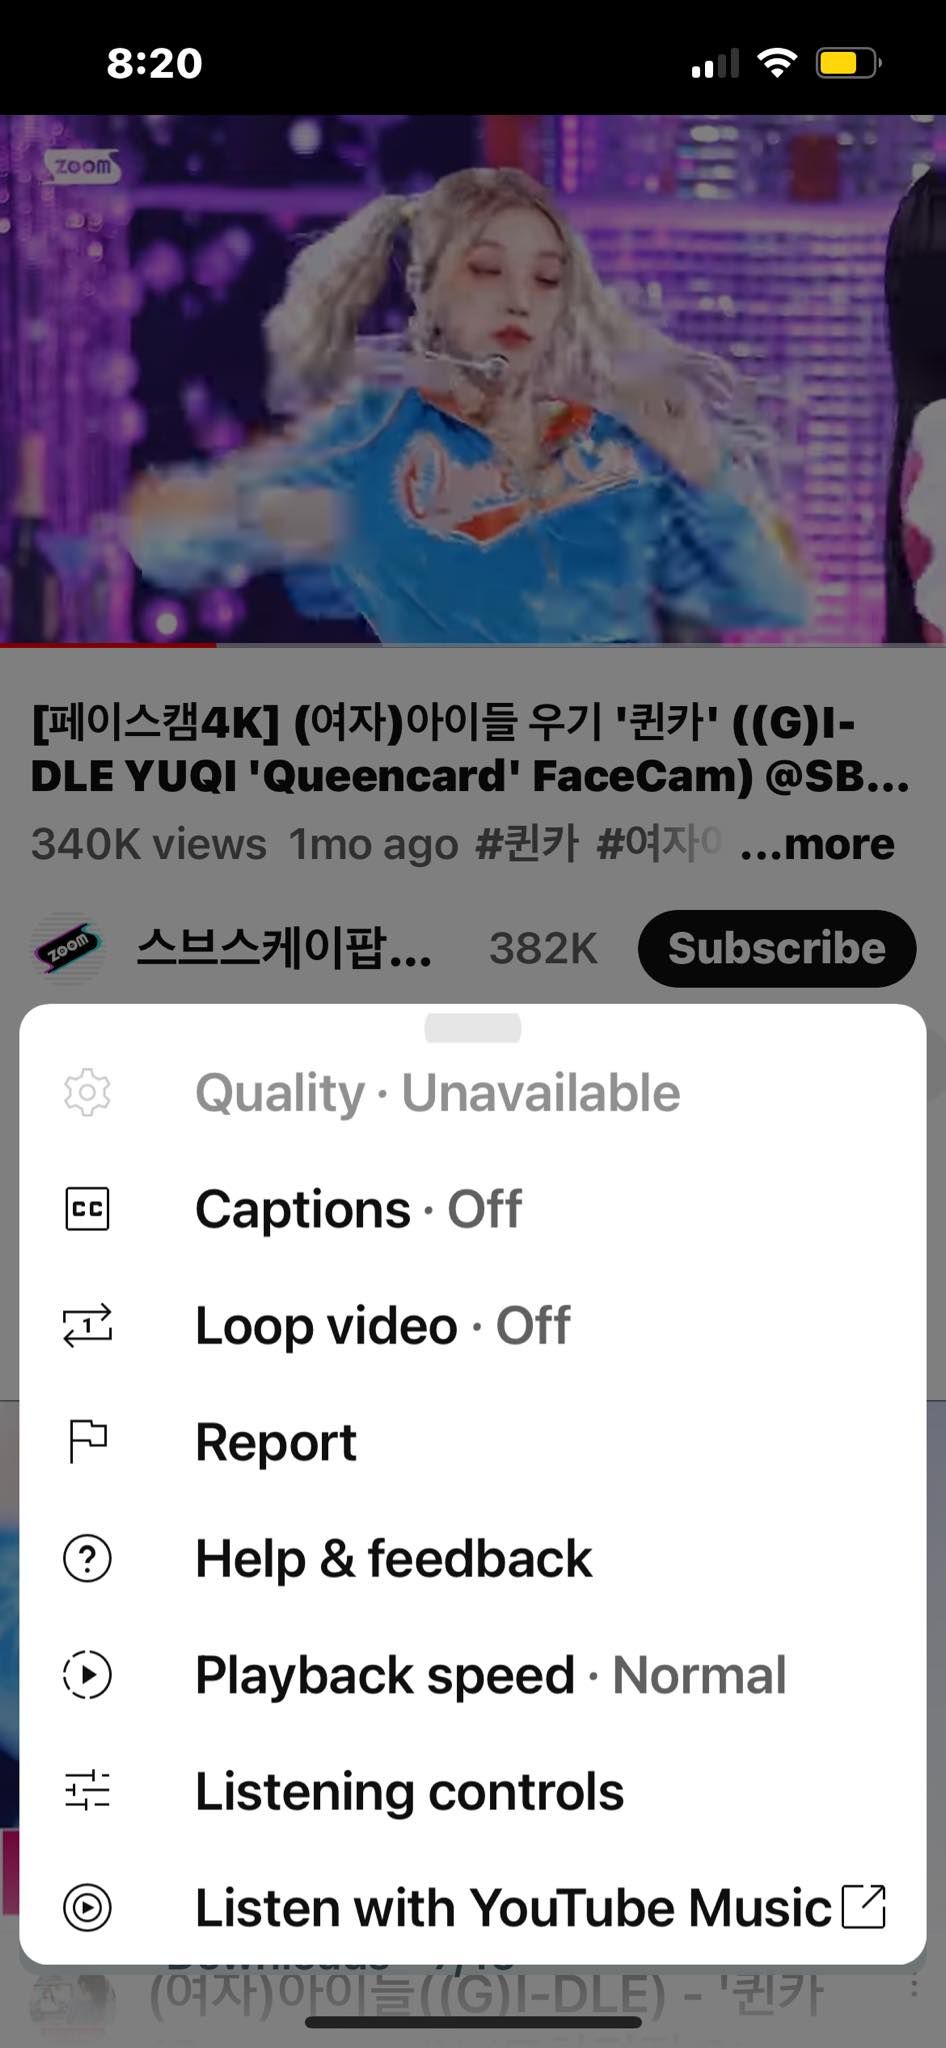 نمایش کیفیت در YouTube Mobile در دسترس نیست